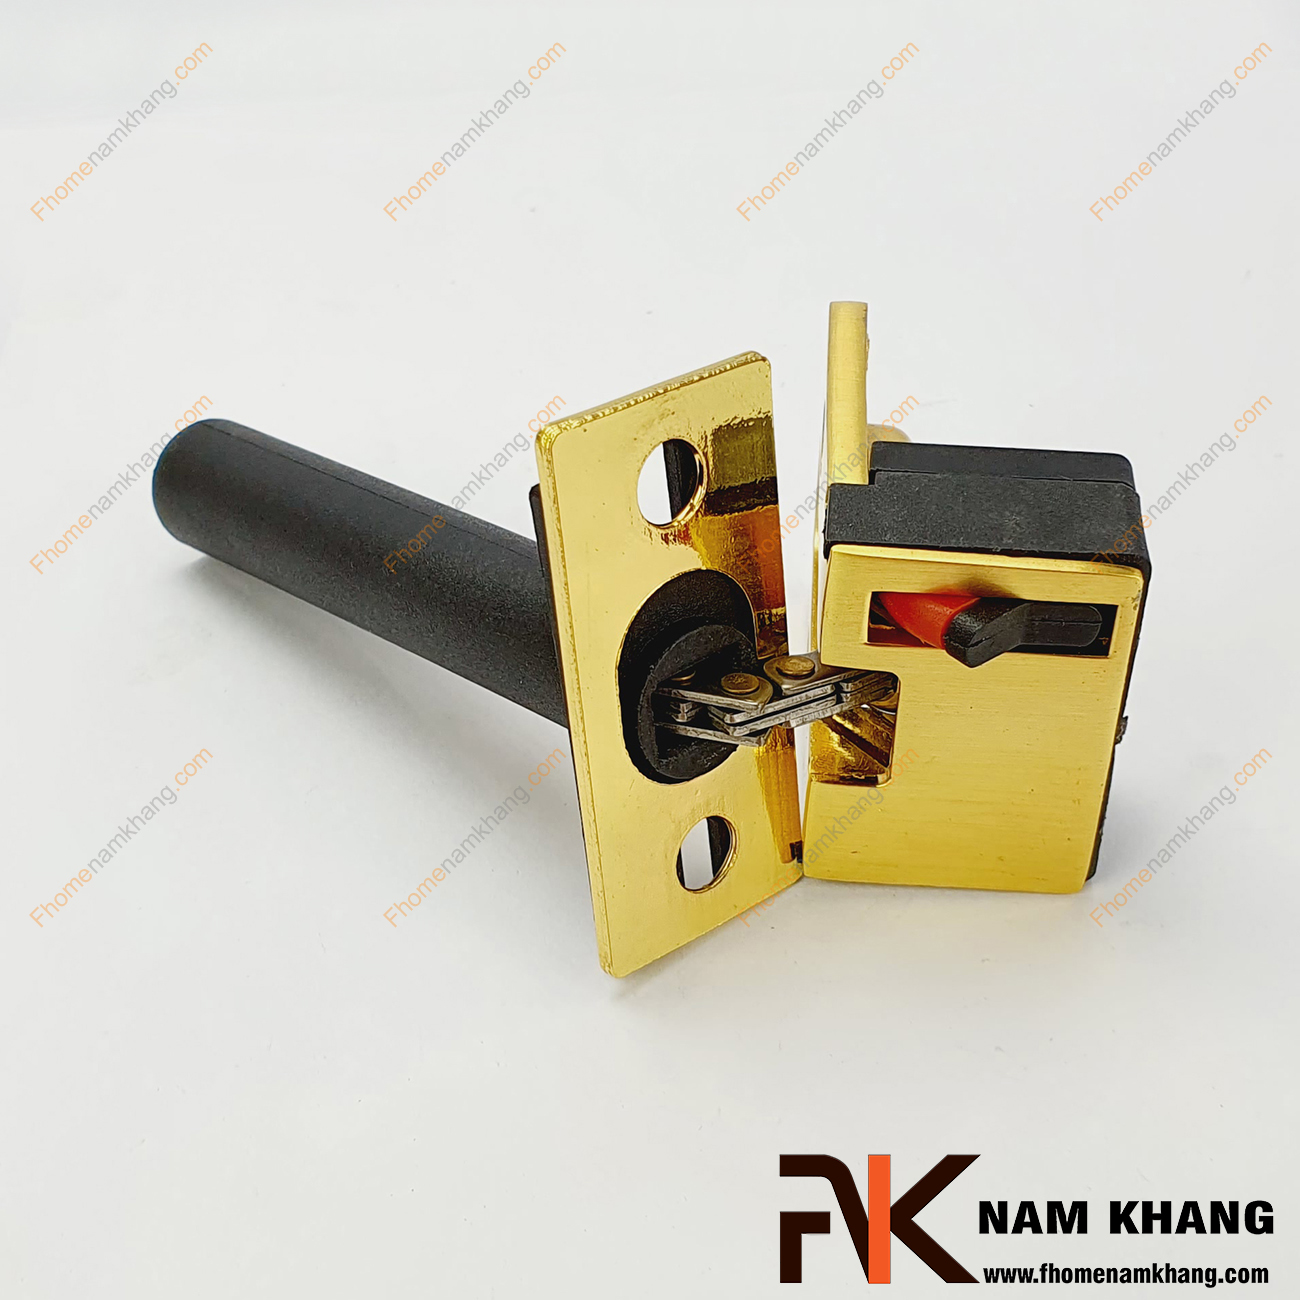 Chốt xích gài cửa an toàn cao cấp màu vàng NK800XV-V hiện là một sản phẩm hữu ích, an toàn được lựa chọn lắp đặt thêm vào hầu hết các dạng cửa tại các hộ gia đình, chung cư,...